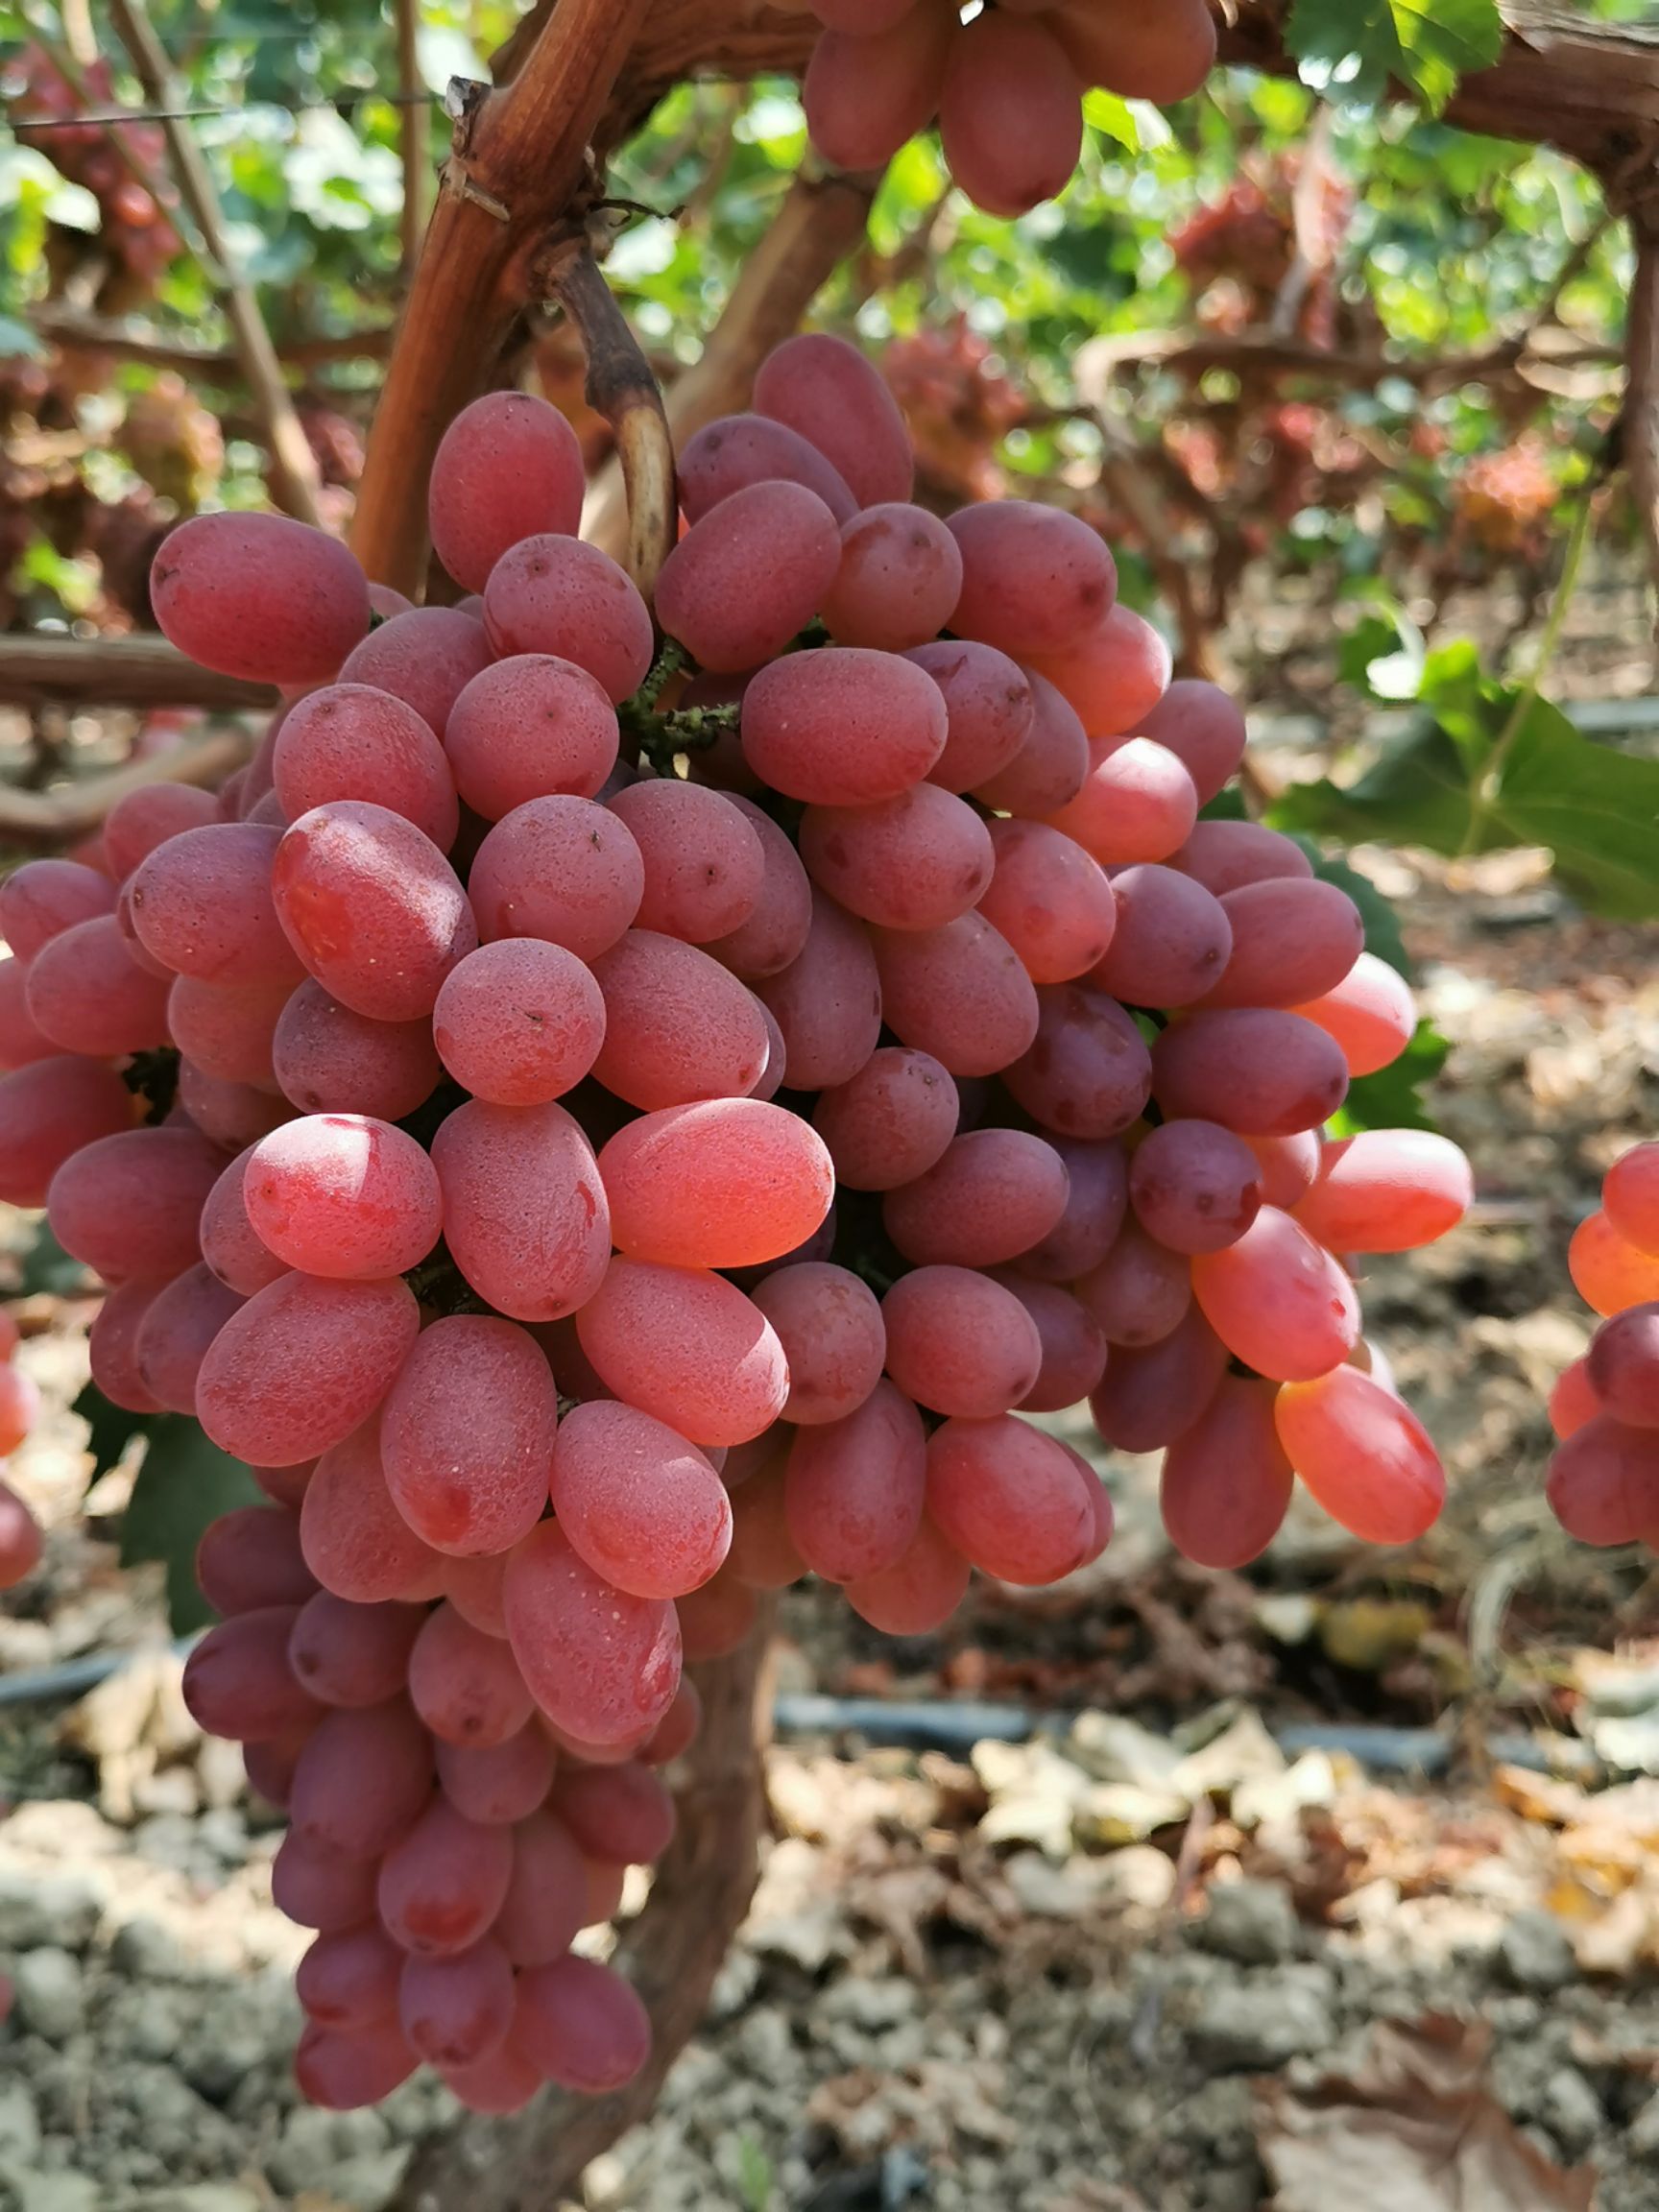 商品属性 品种名:克伦生葡萄 品种名:克伦生葡萄 单串重:1.5- 2斤